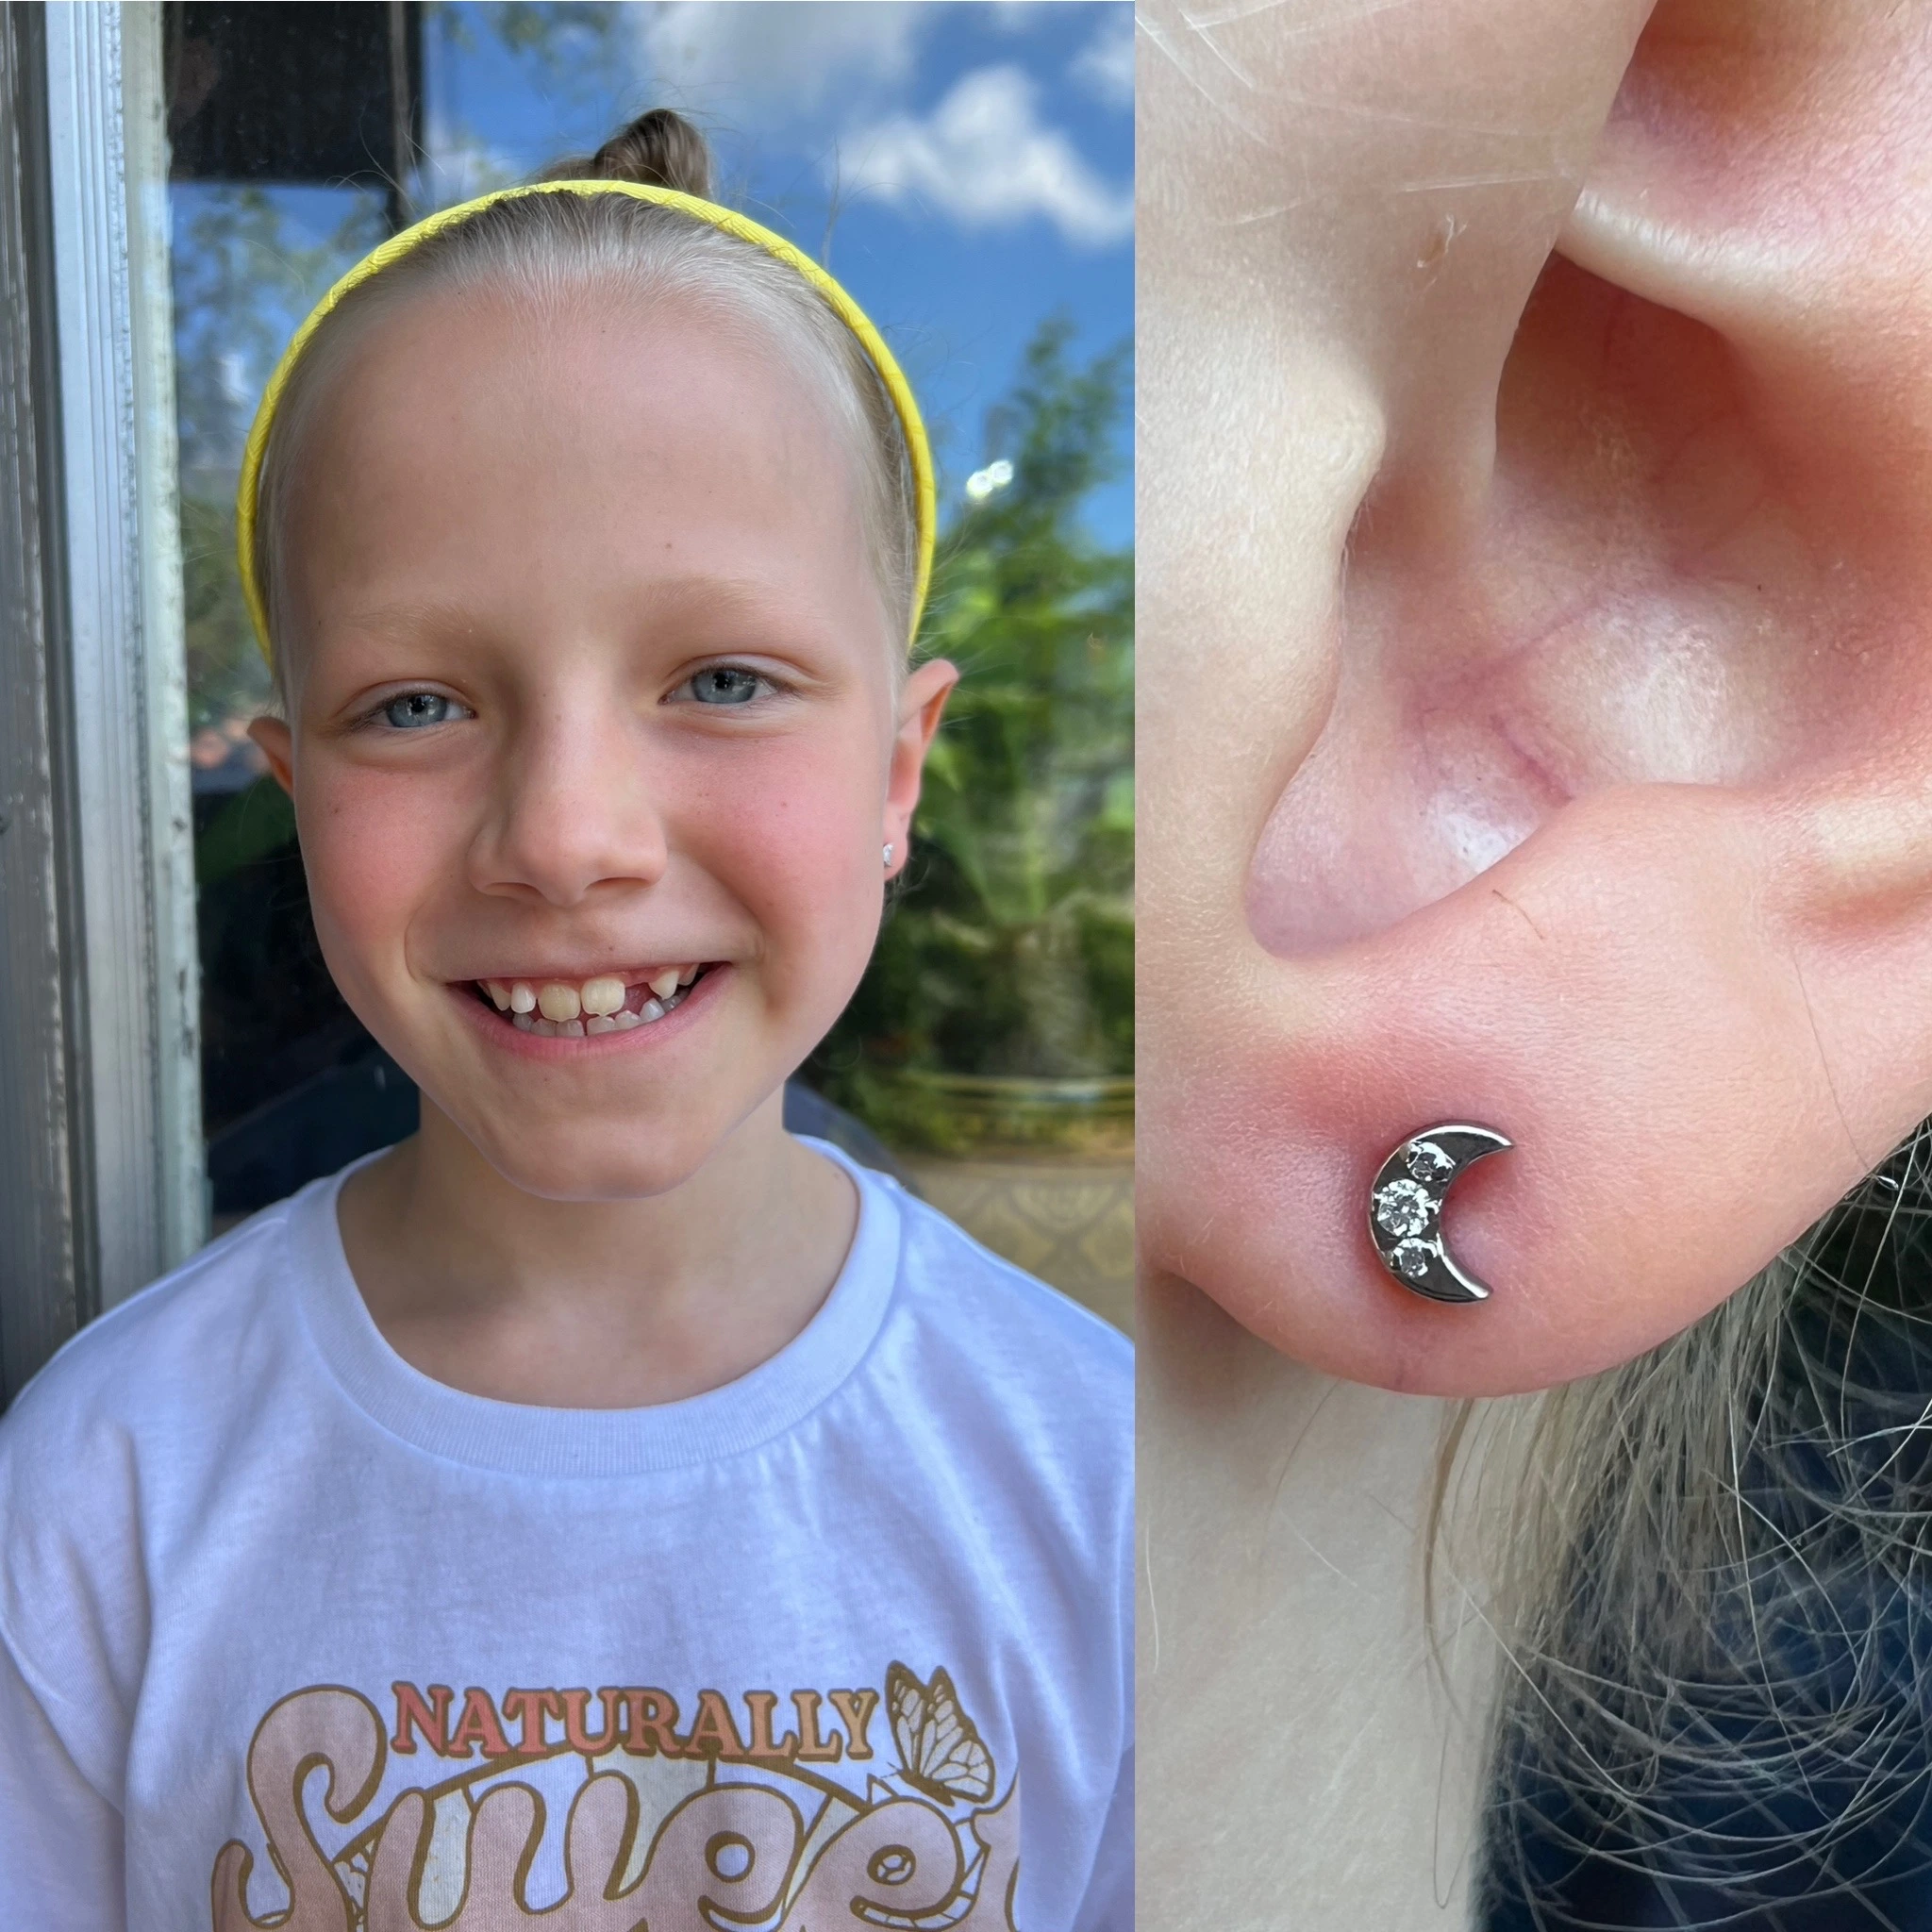 Childrens earlobe piercings